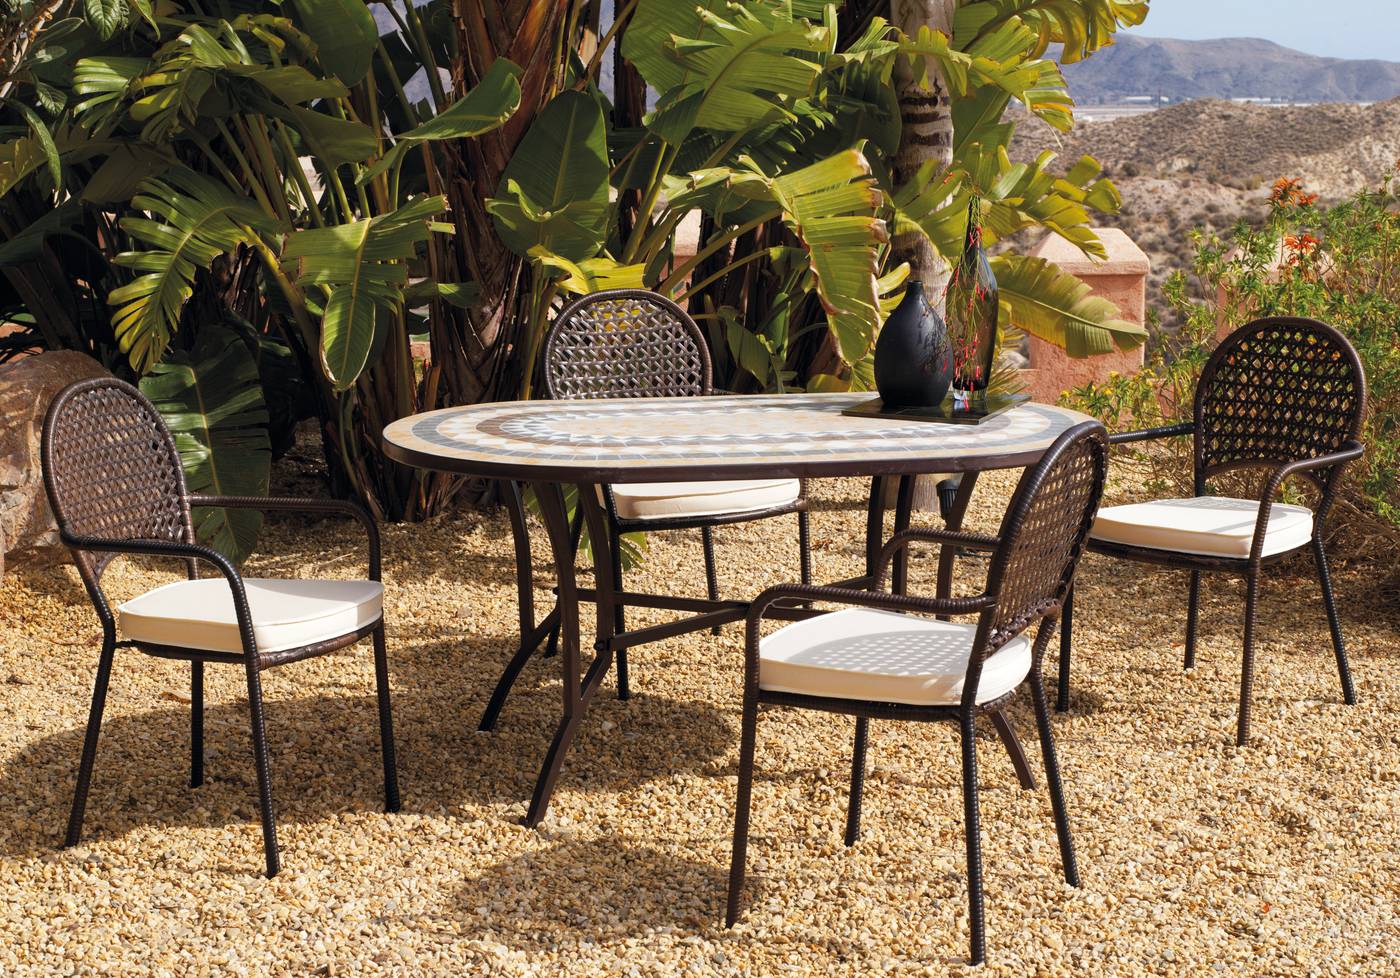 Conjunto para terraza o jardín de forja: 1 mesa ovalada con panel mosaico + 4 sillones de ratán sintético + 4 cojines.